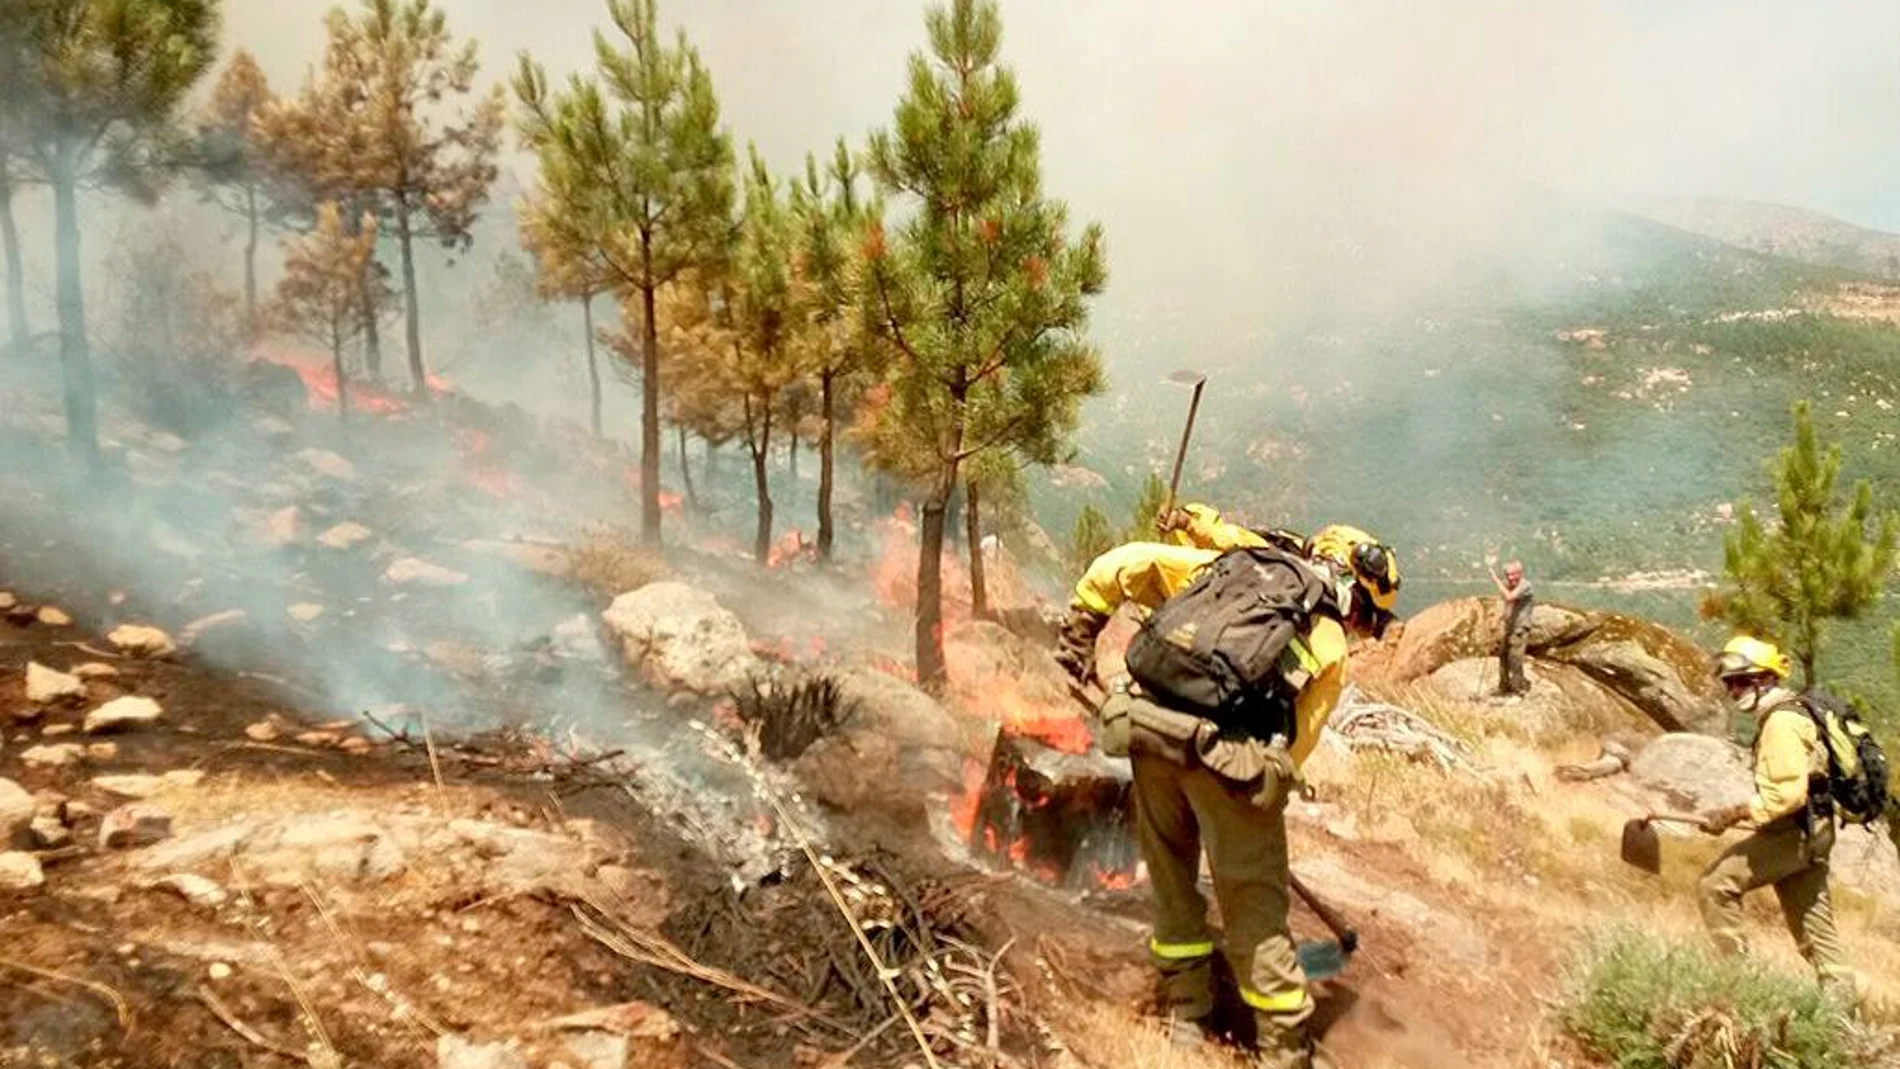 Operarios del servicio de extinción de incendios trabajan para sofocar las llamas en el fuego de Casavieja, en el valle del Tiétar